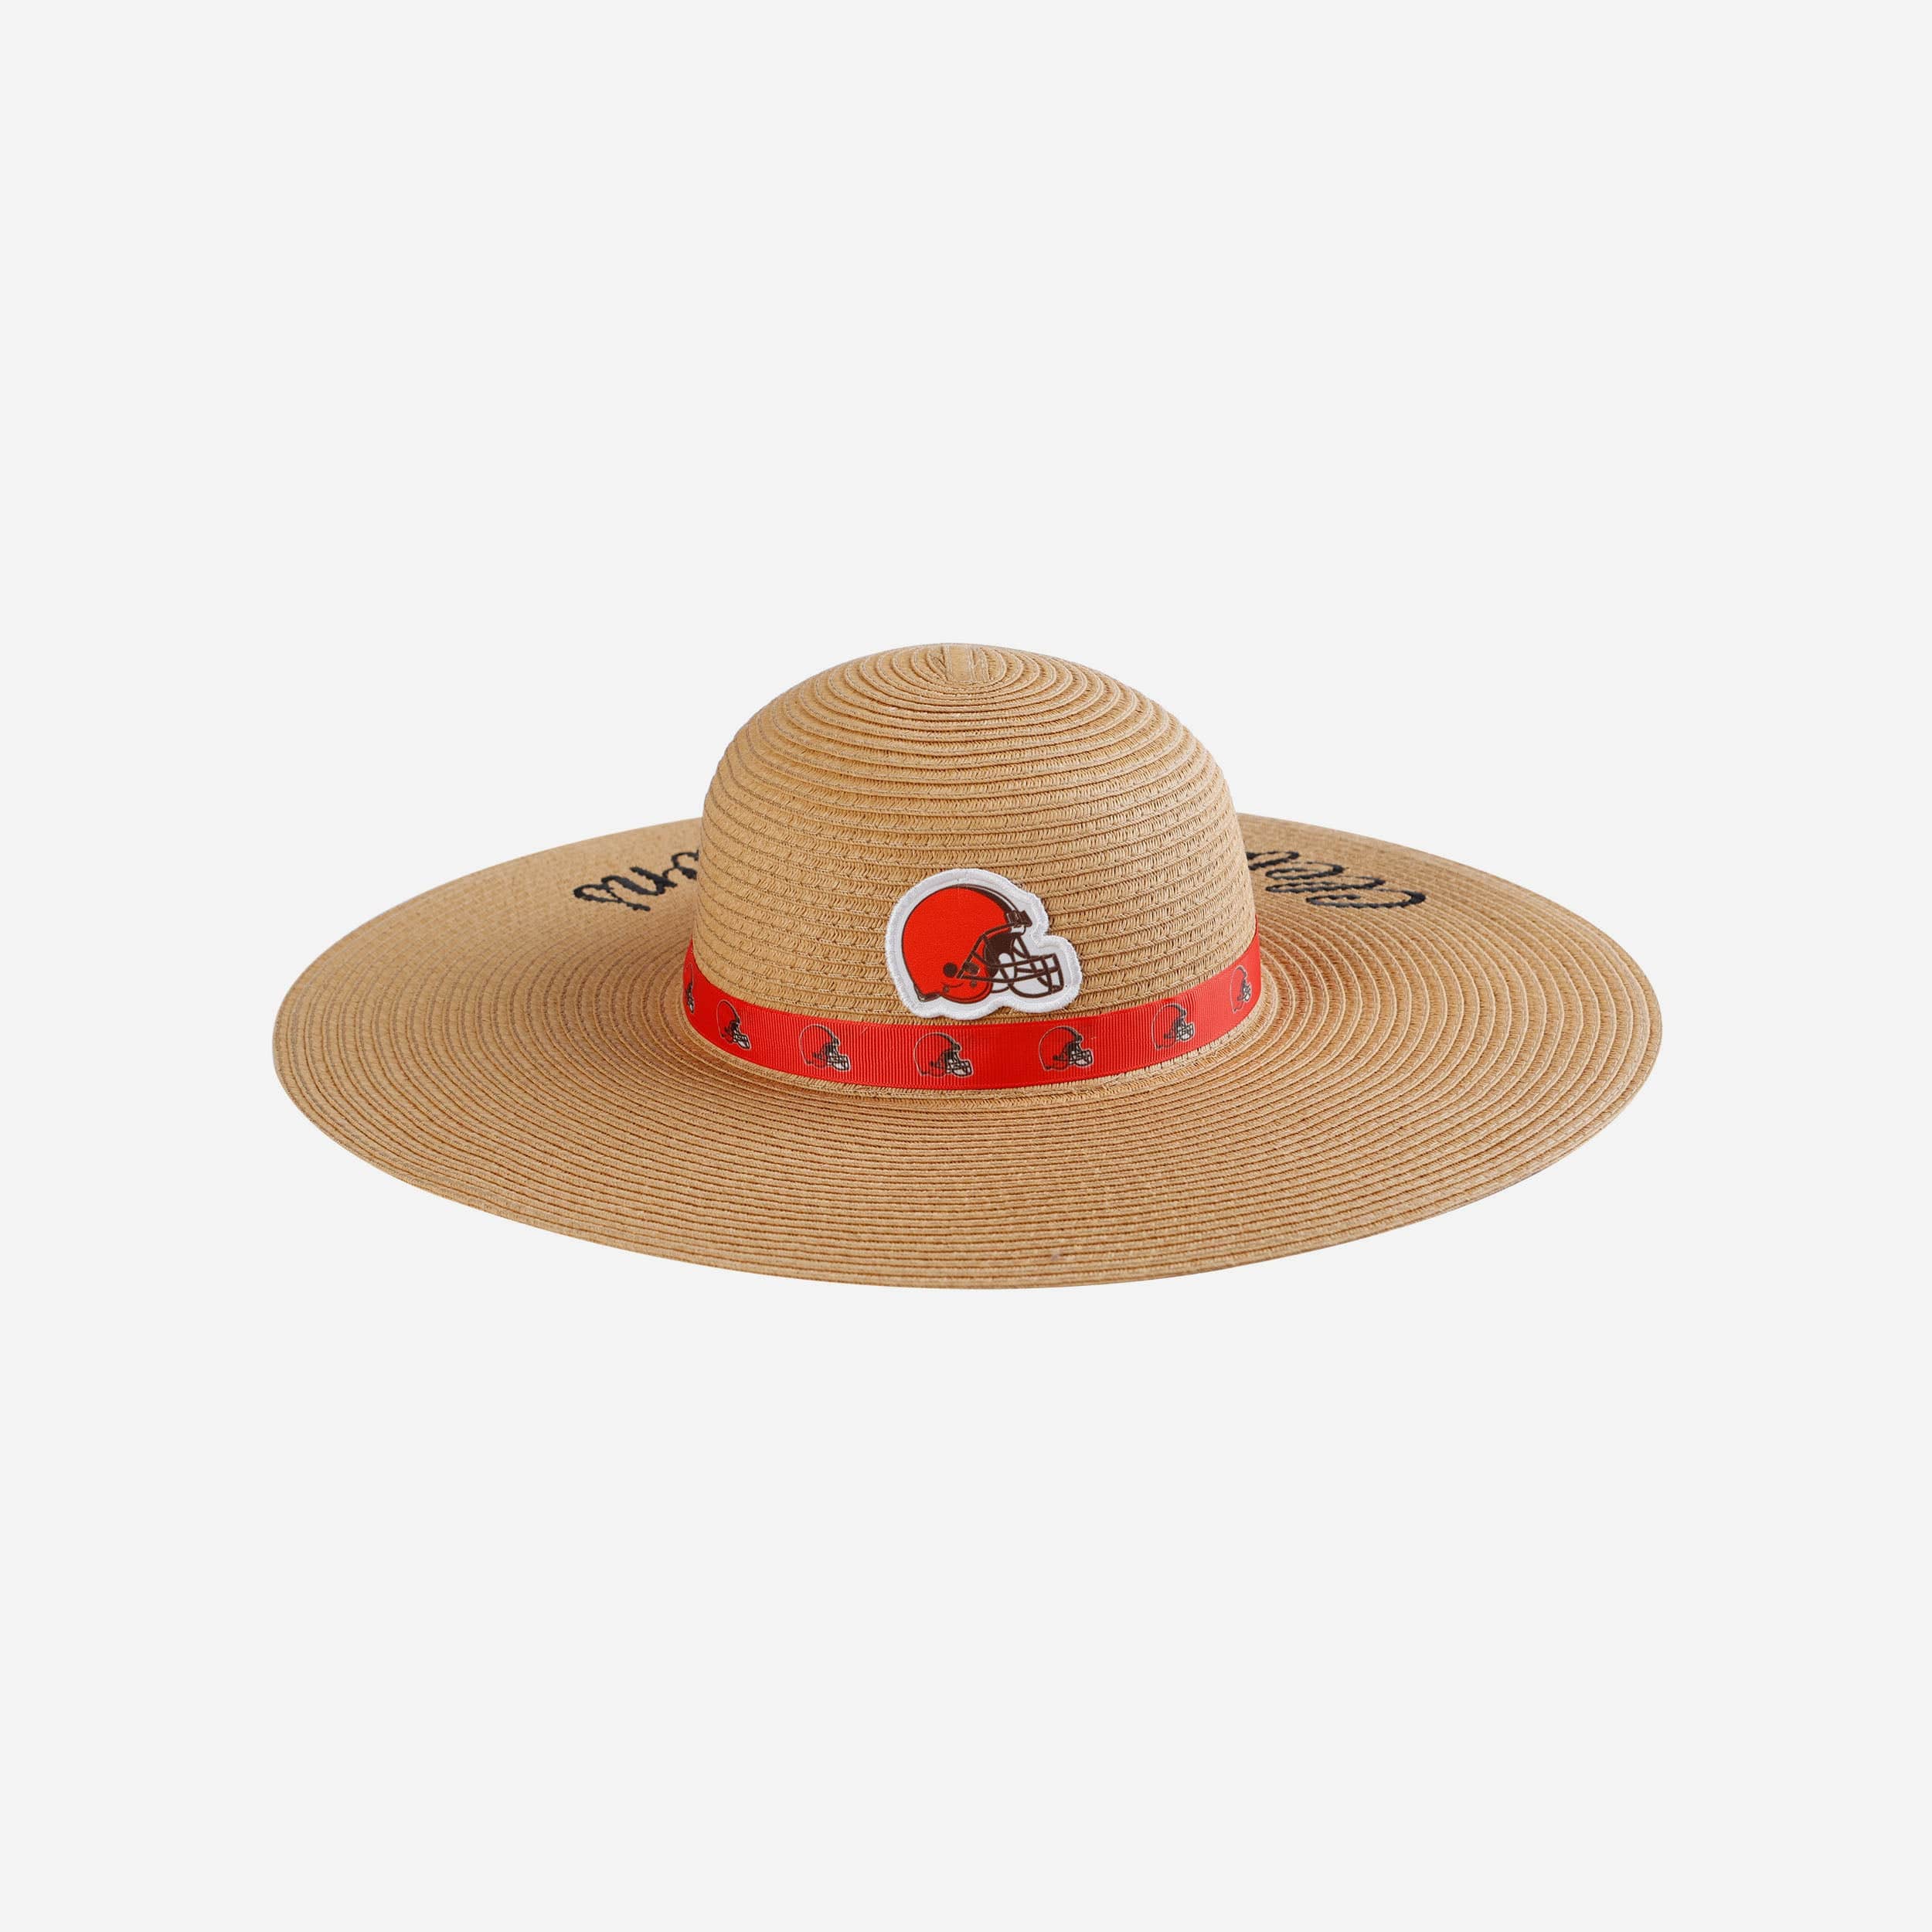 FOCO Cleveland Browns Womens Wordmark Beach Straw Hat - Women